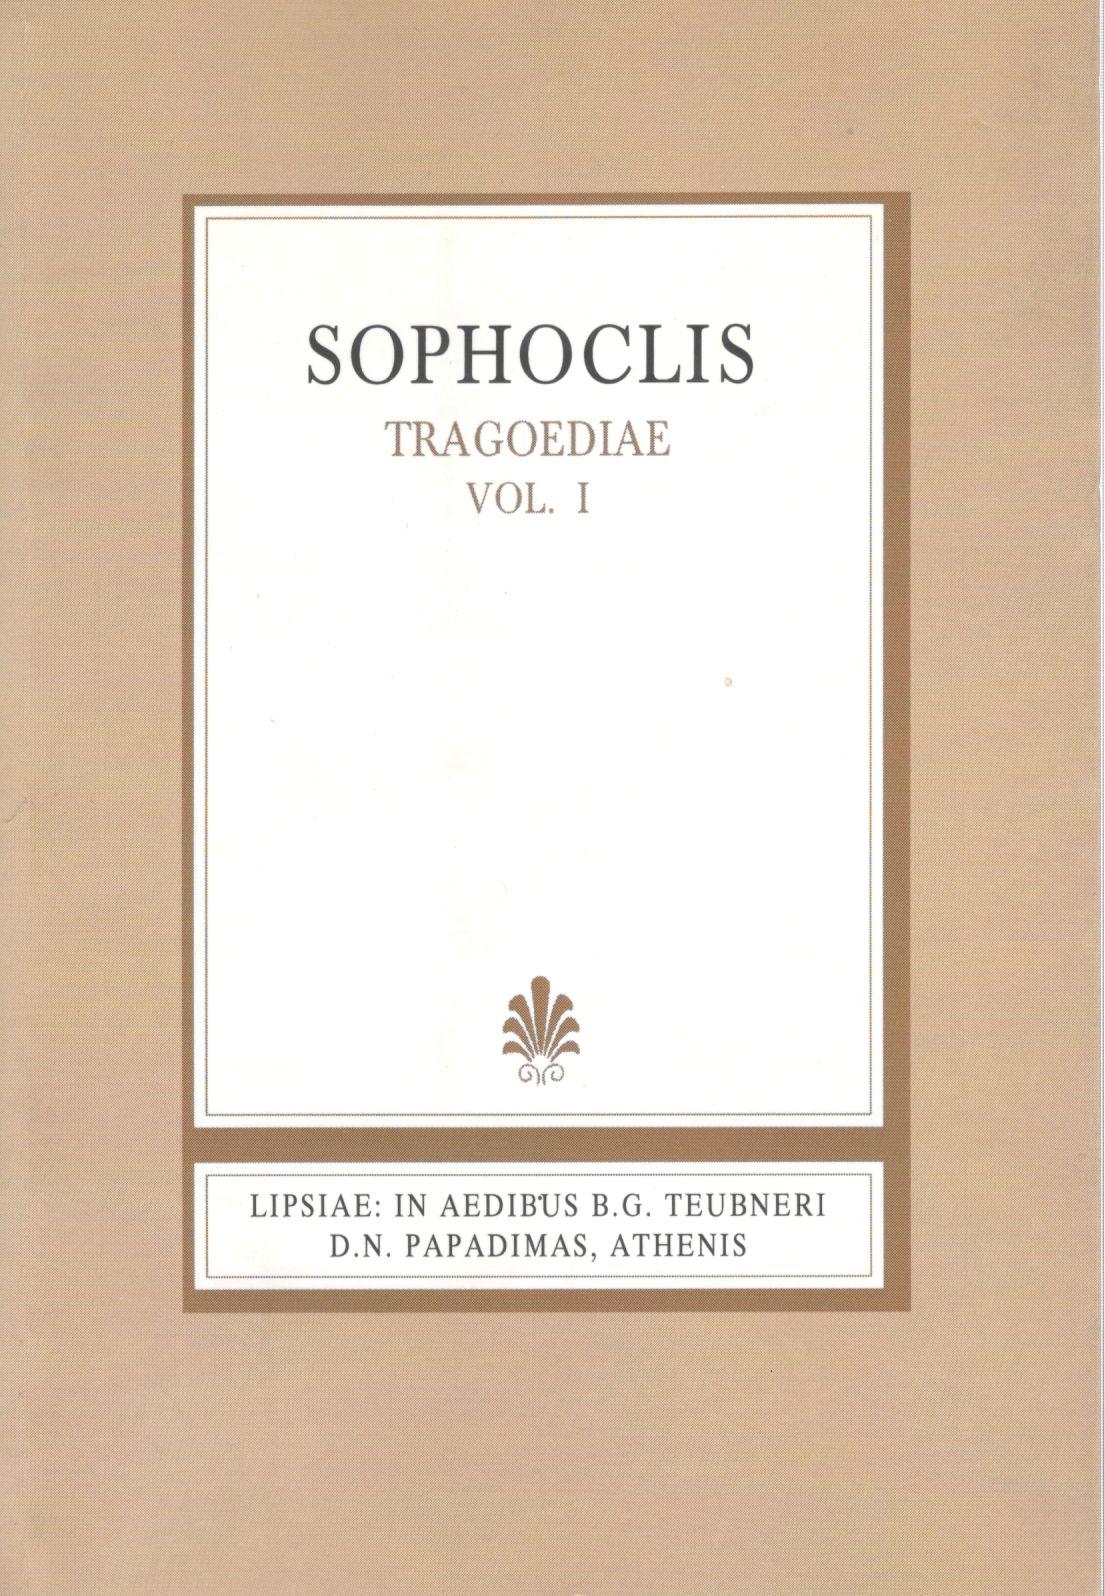 Sophoclis, Tragoediae, Vol. I, [Σοφοκλέους, Τραγωδίαι, τ. Α']